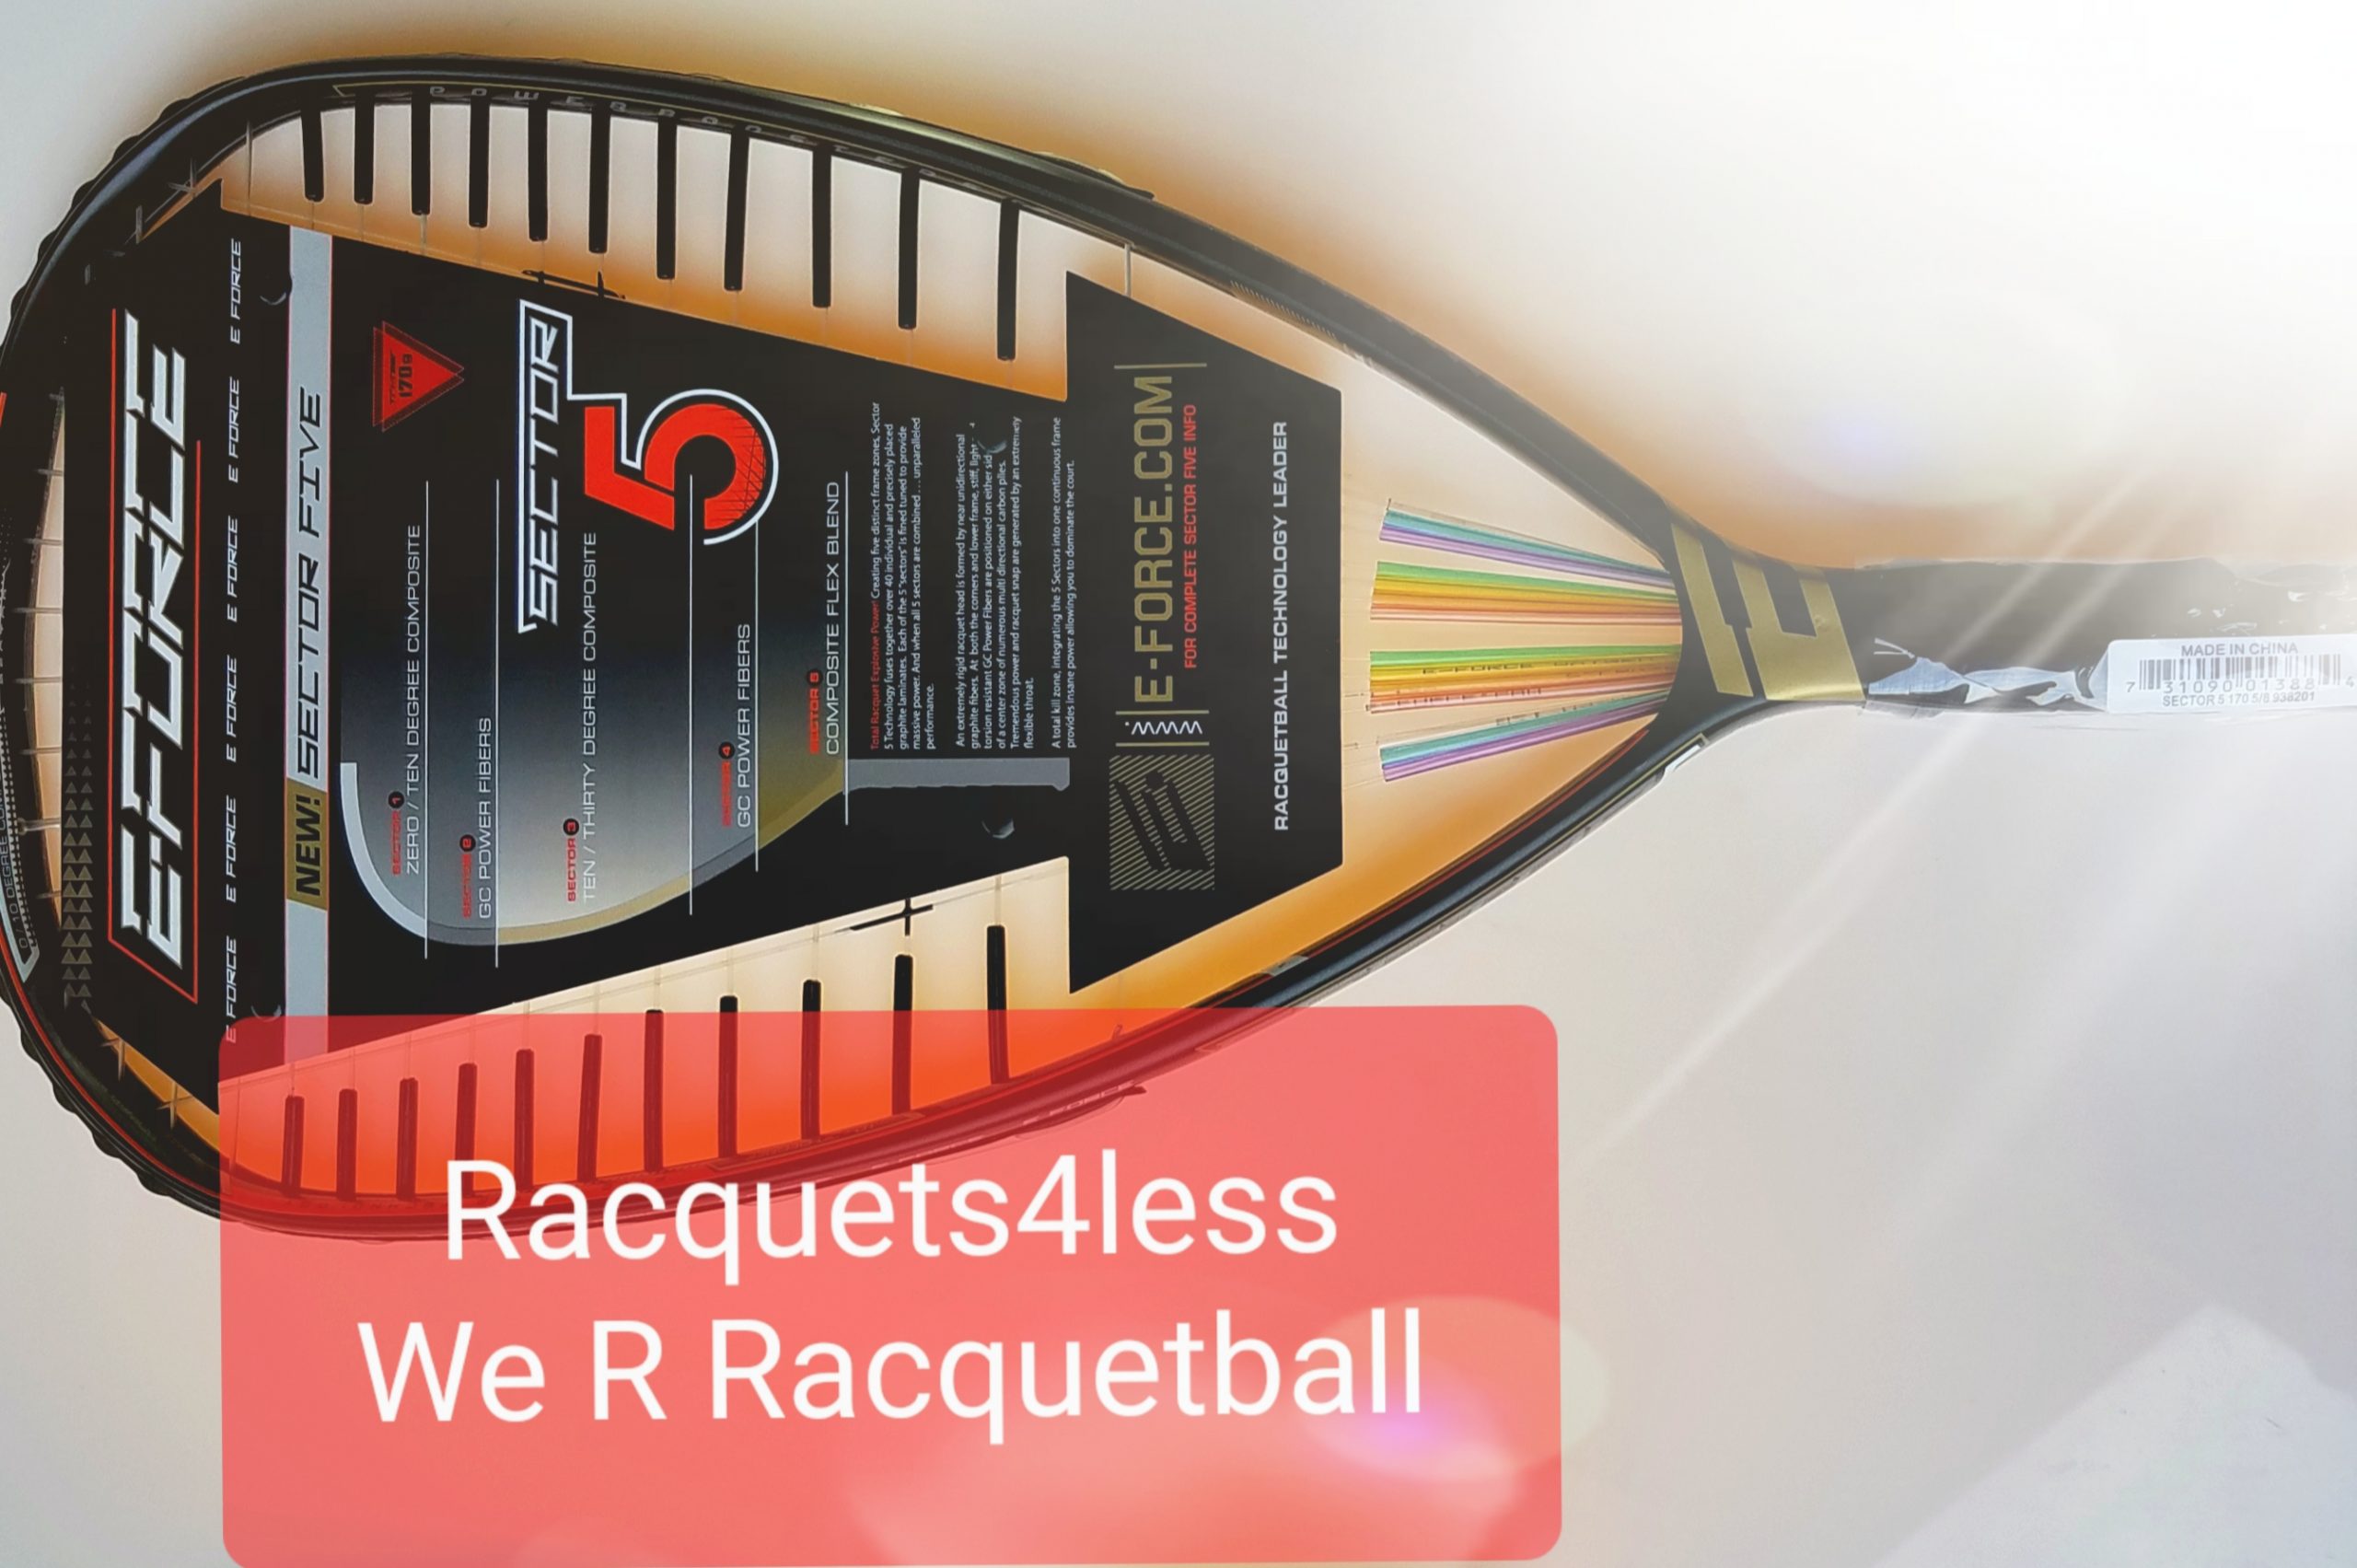 E-Force Apocalypse BETA 160 Racquetball Racquet 3 5/8 Grip Warranty from USA 